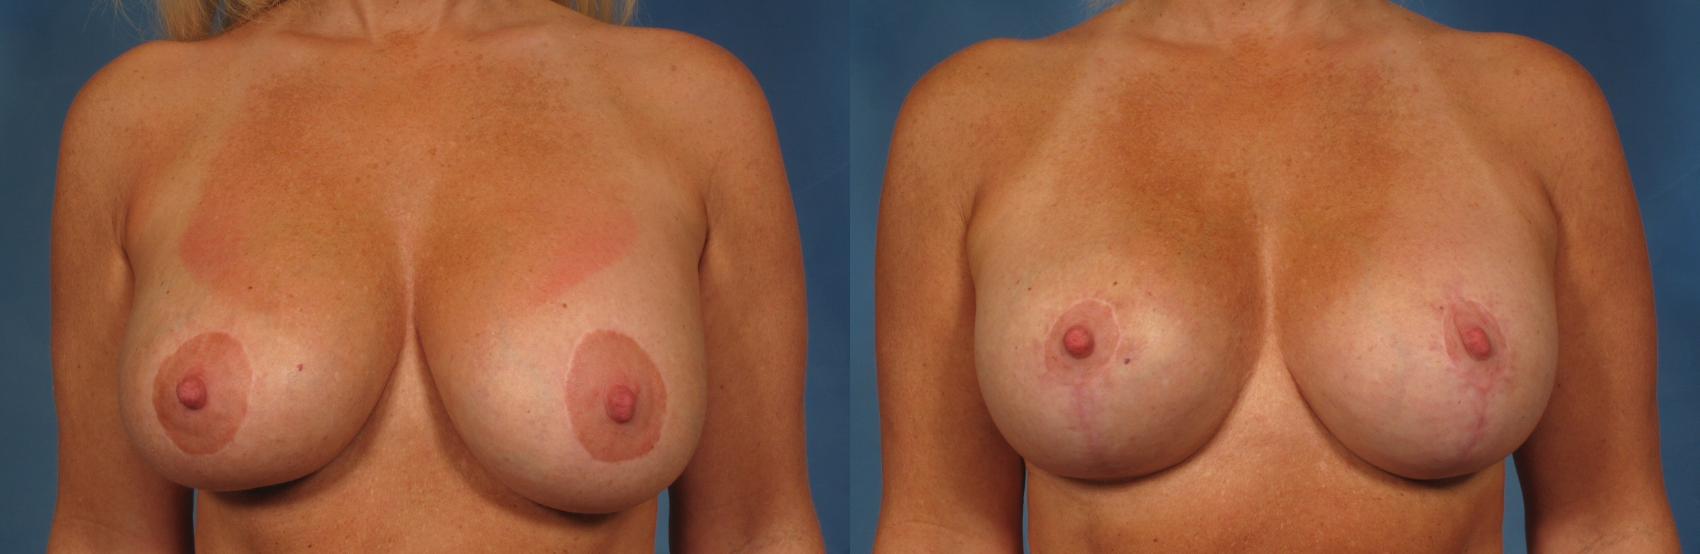 乳房植入物交换/翻修前后案例261视图1那不勒斯和佛罗里达州迈尔斯堡的视图